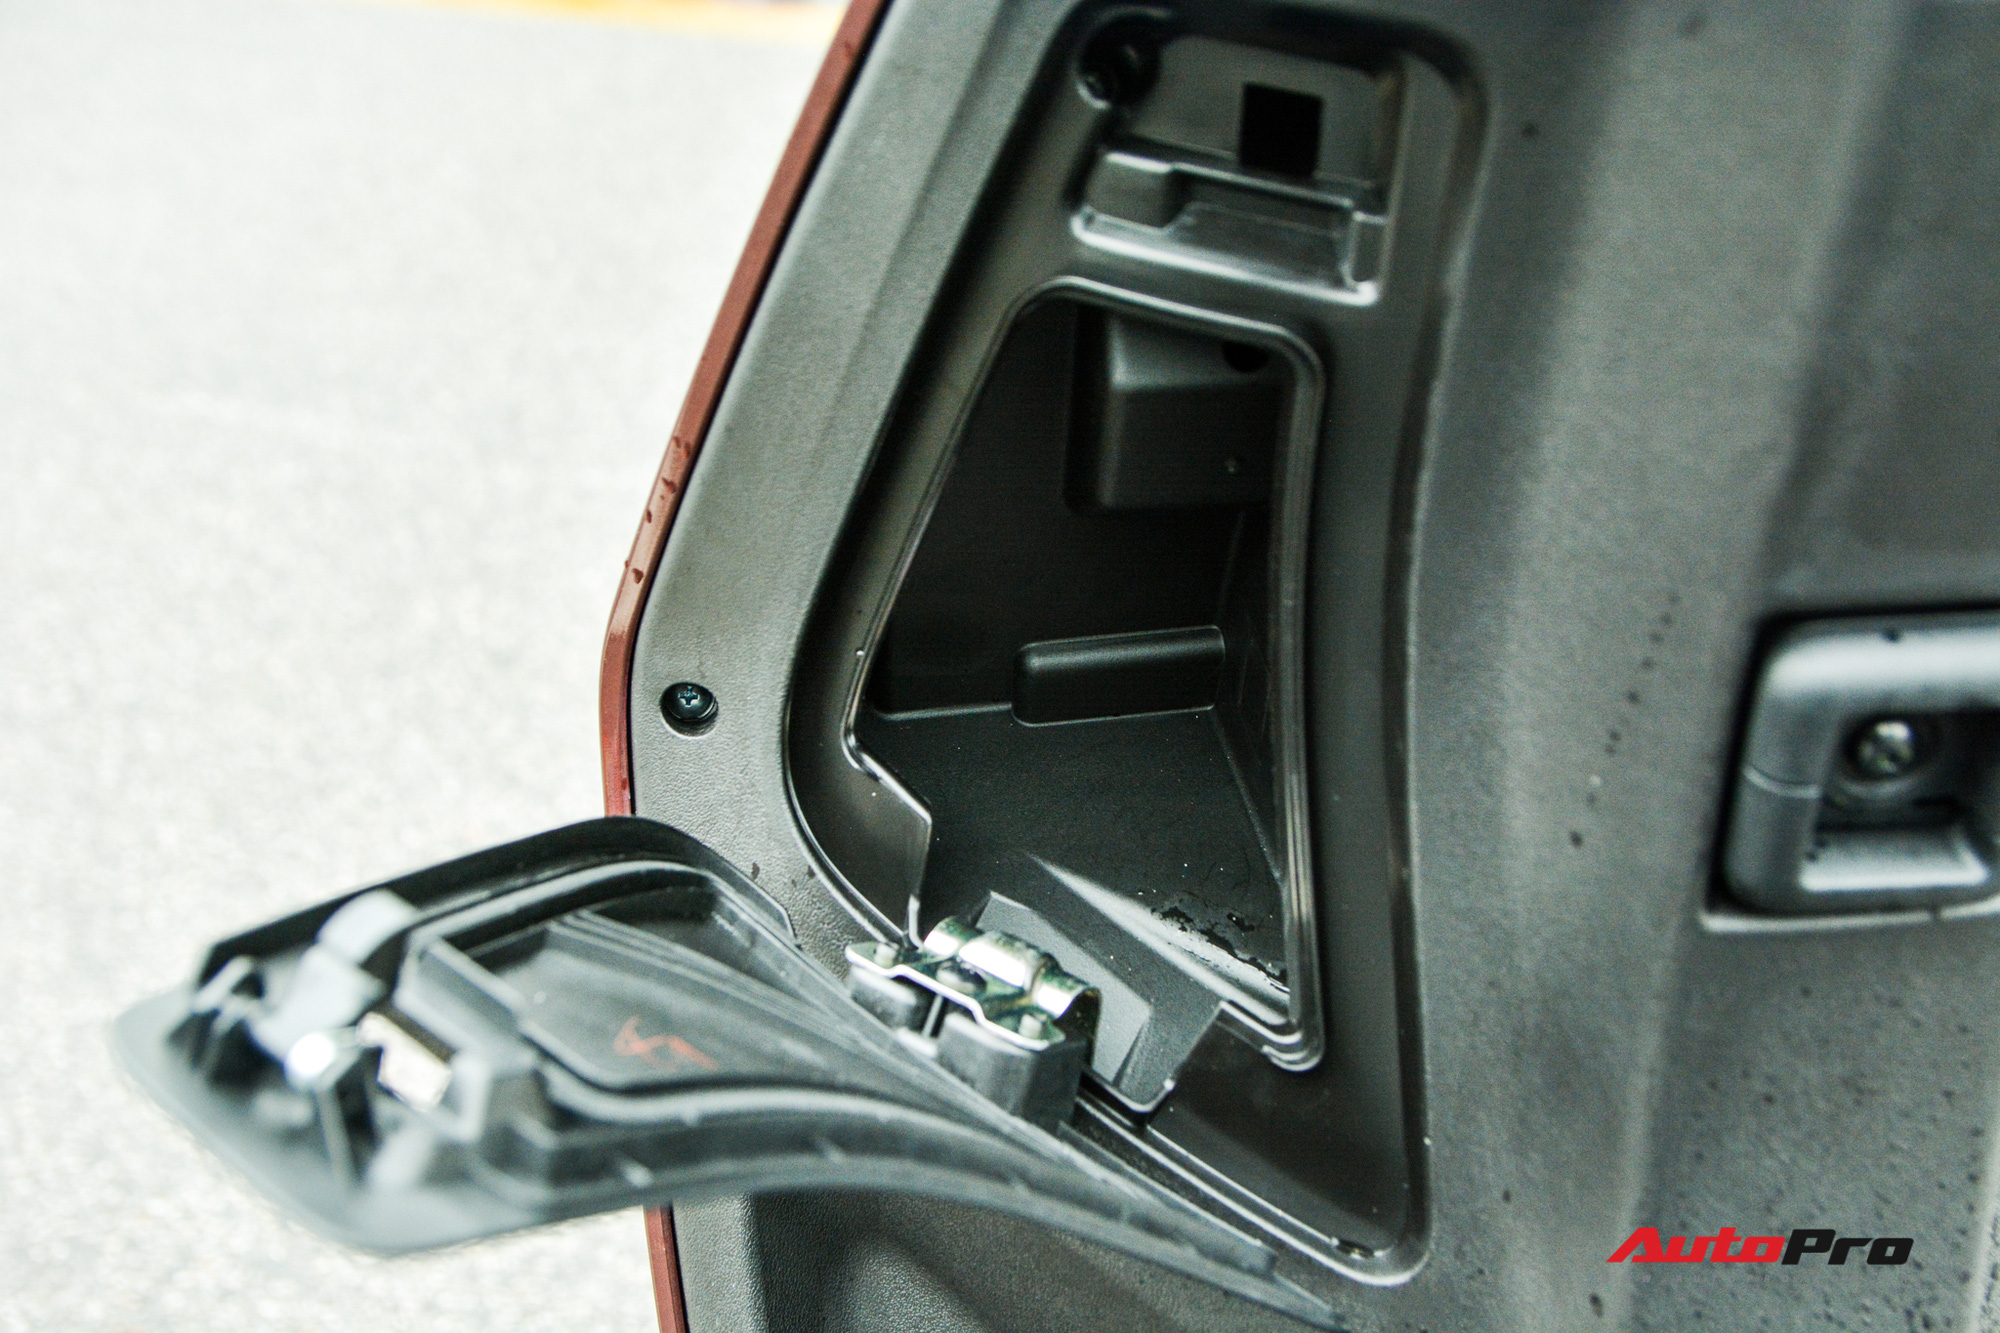 Ra mắt VinFast Theon: Xe máy điện to như Honda SH, có ABS 2 kênh và nhiều công nghệ ‘xịn xò’ khác - Ảnh 9.